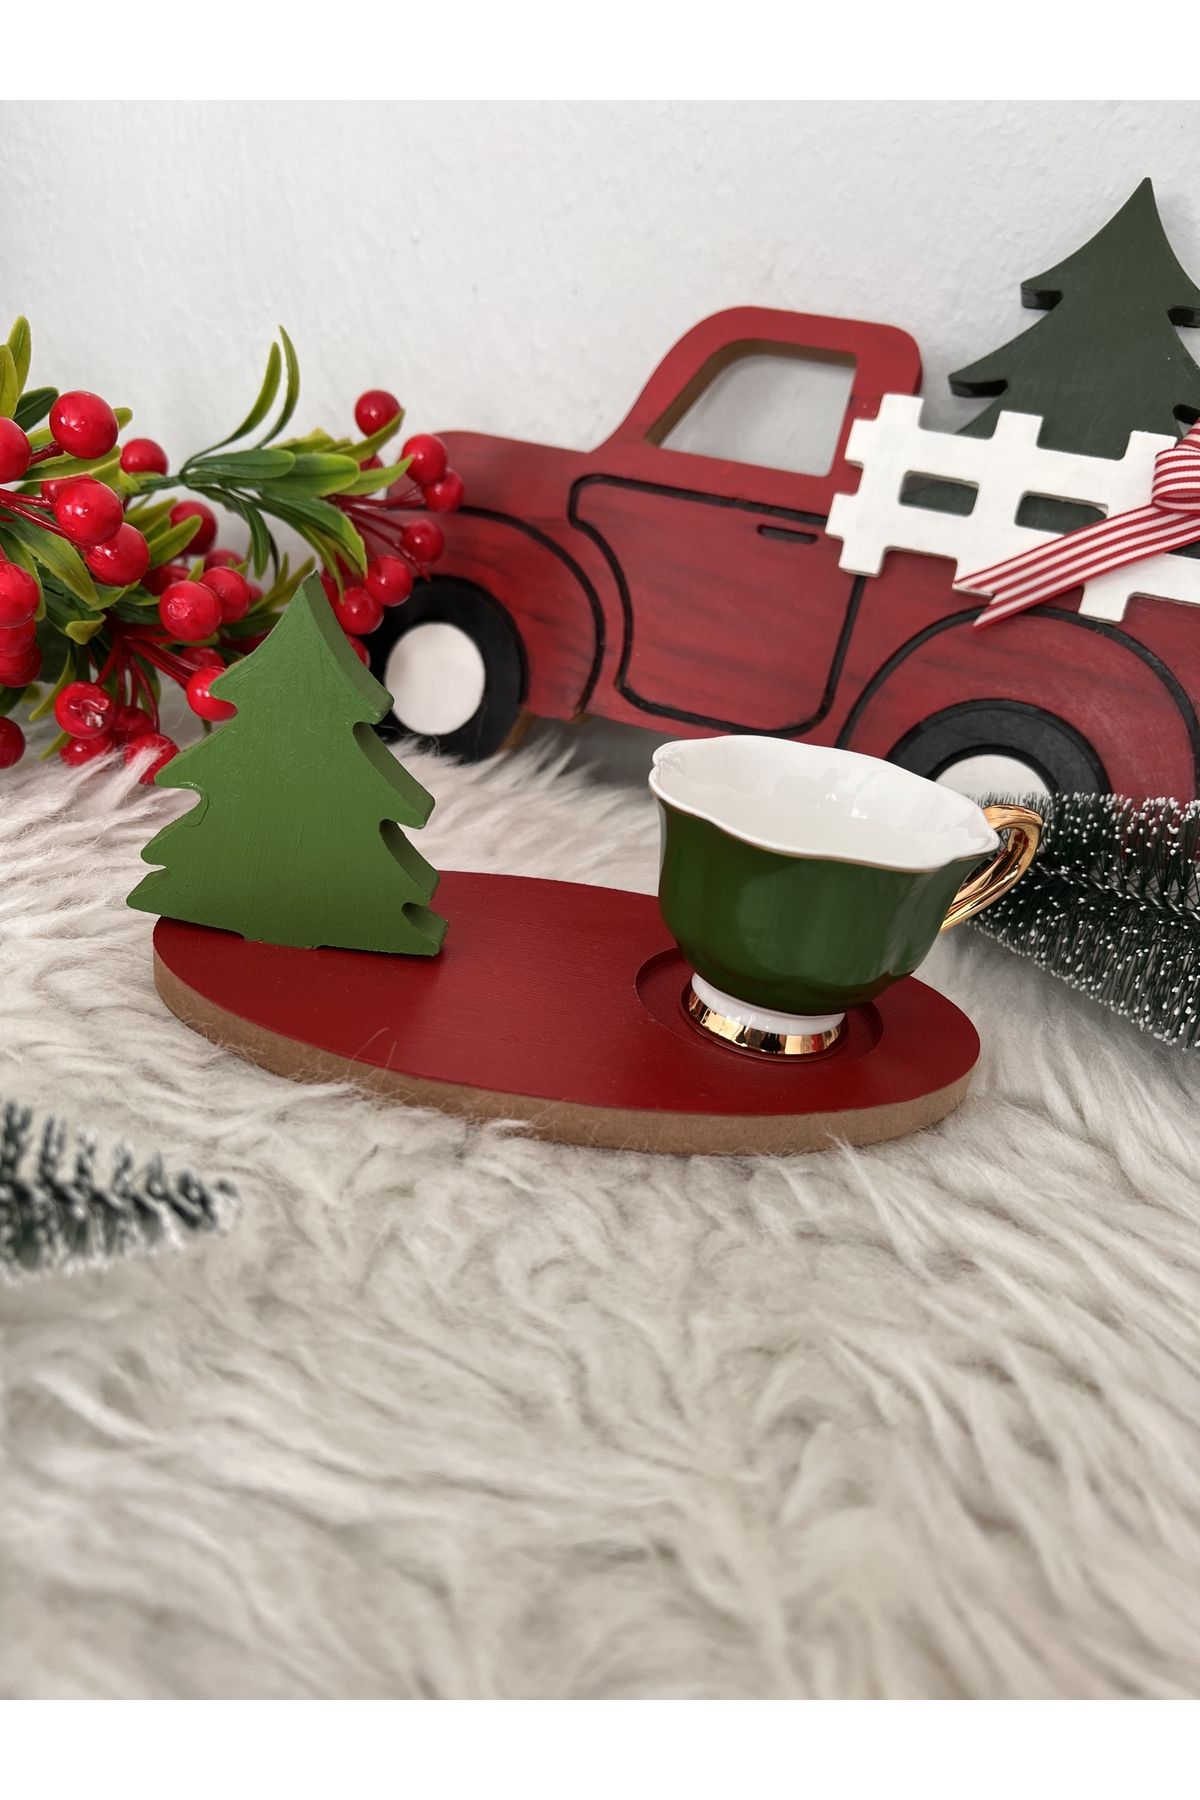 Ayd Home Çam Ağaclı Kahve Çay Sunumluğu Noel Ahşap Christmas Yeniyıl Yılbaşı 18 Cm Newyear Kırmızı